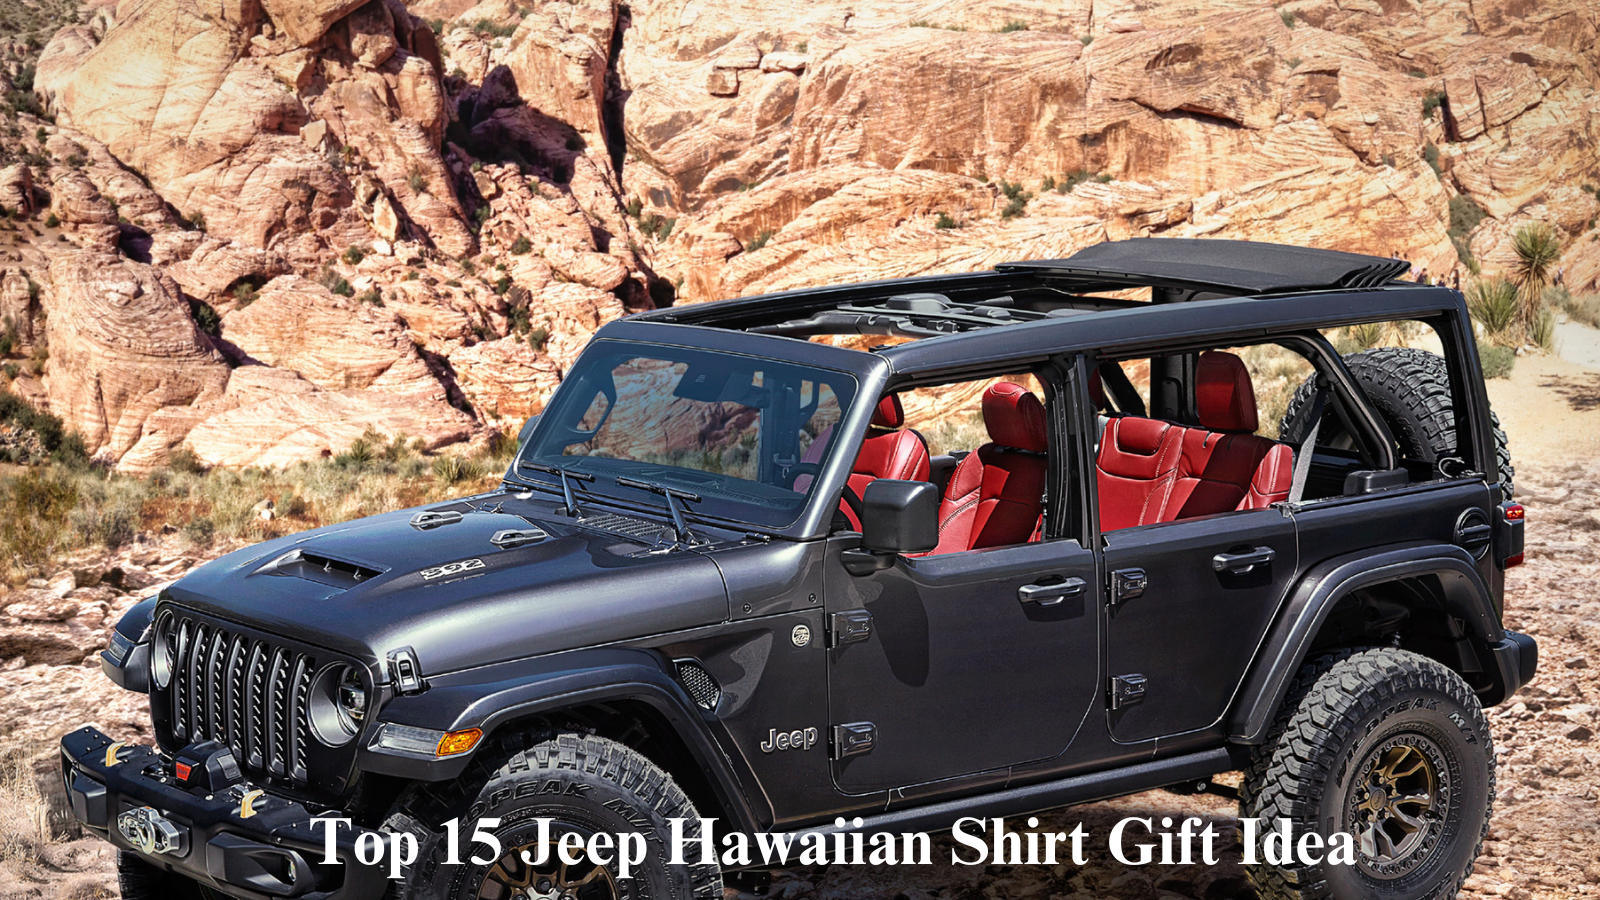 Top 15 Jeep Hawaiian Shirt Gift Idea